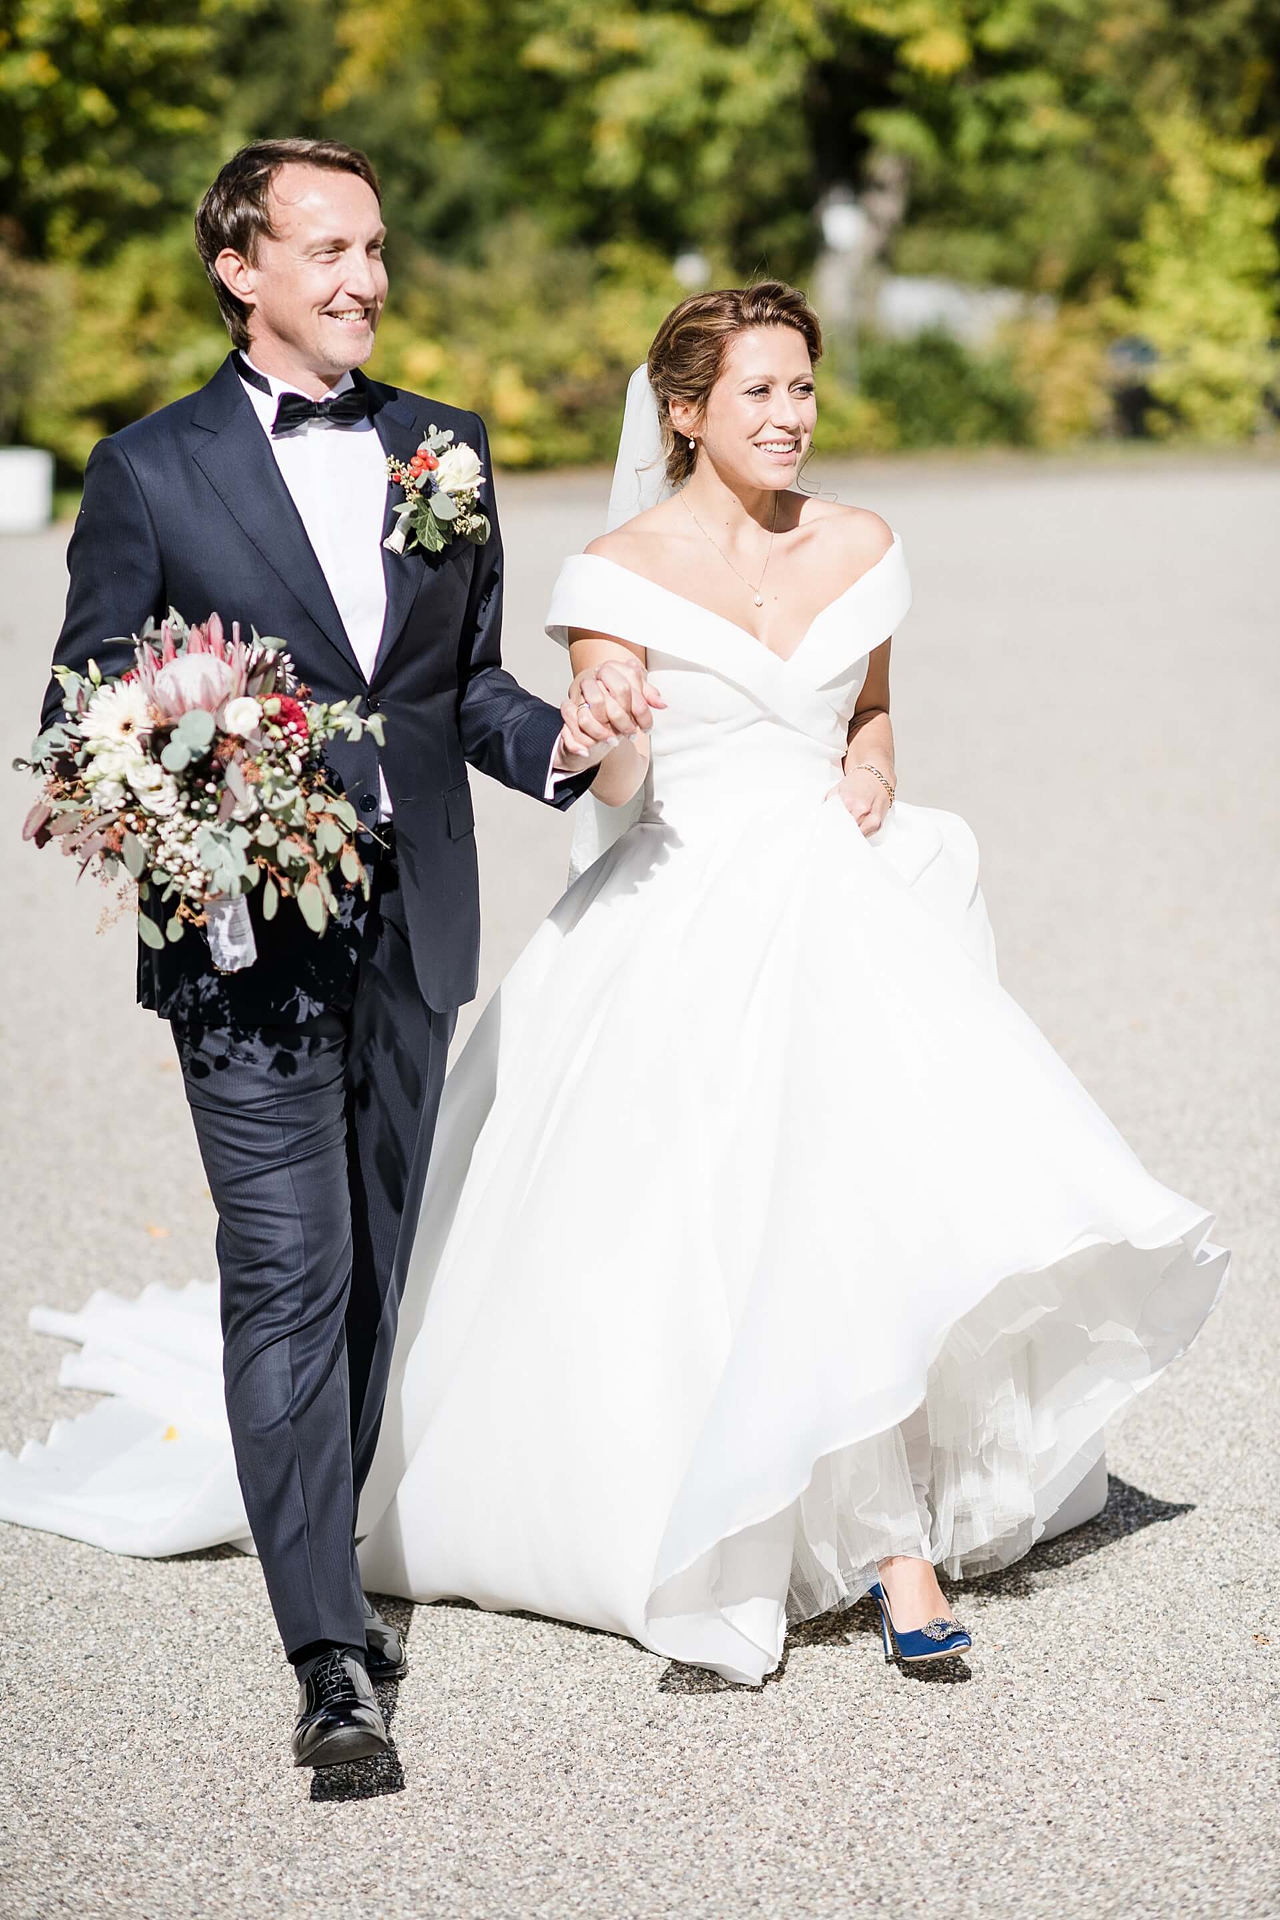 Rebecca Conte Fotografie: Brautpaar läuft zum den Gästen